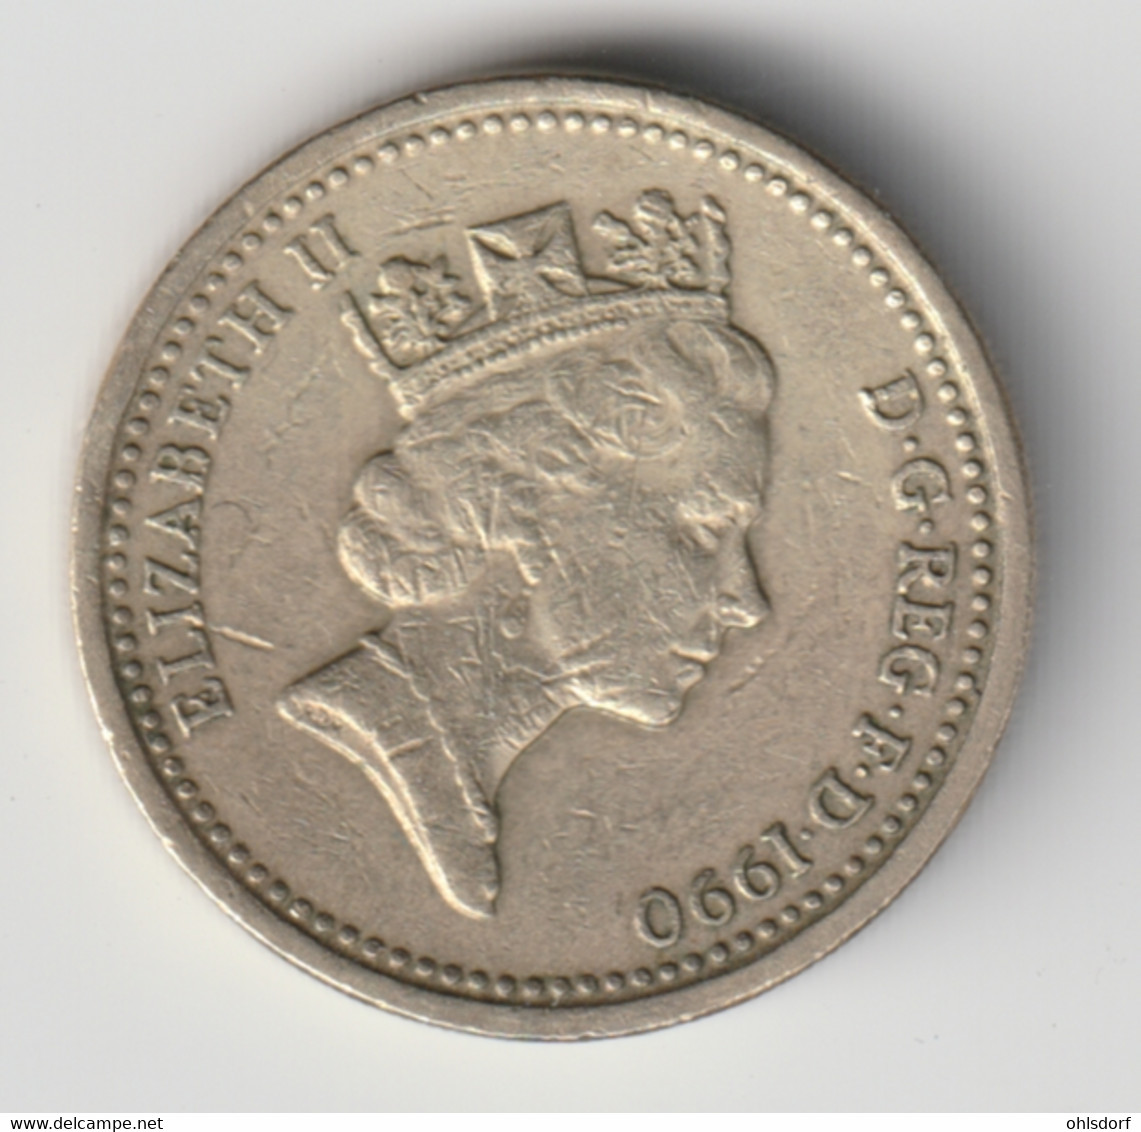 GREAT BRITAIN 1990: 1 Pound, KM 941 - 1 Pound